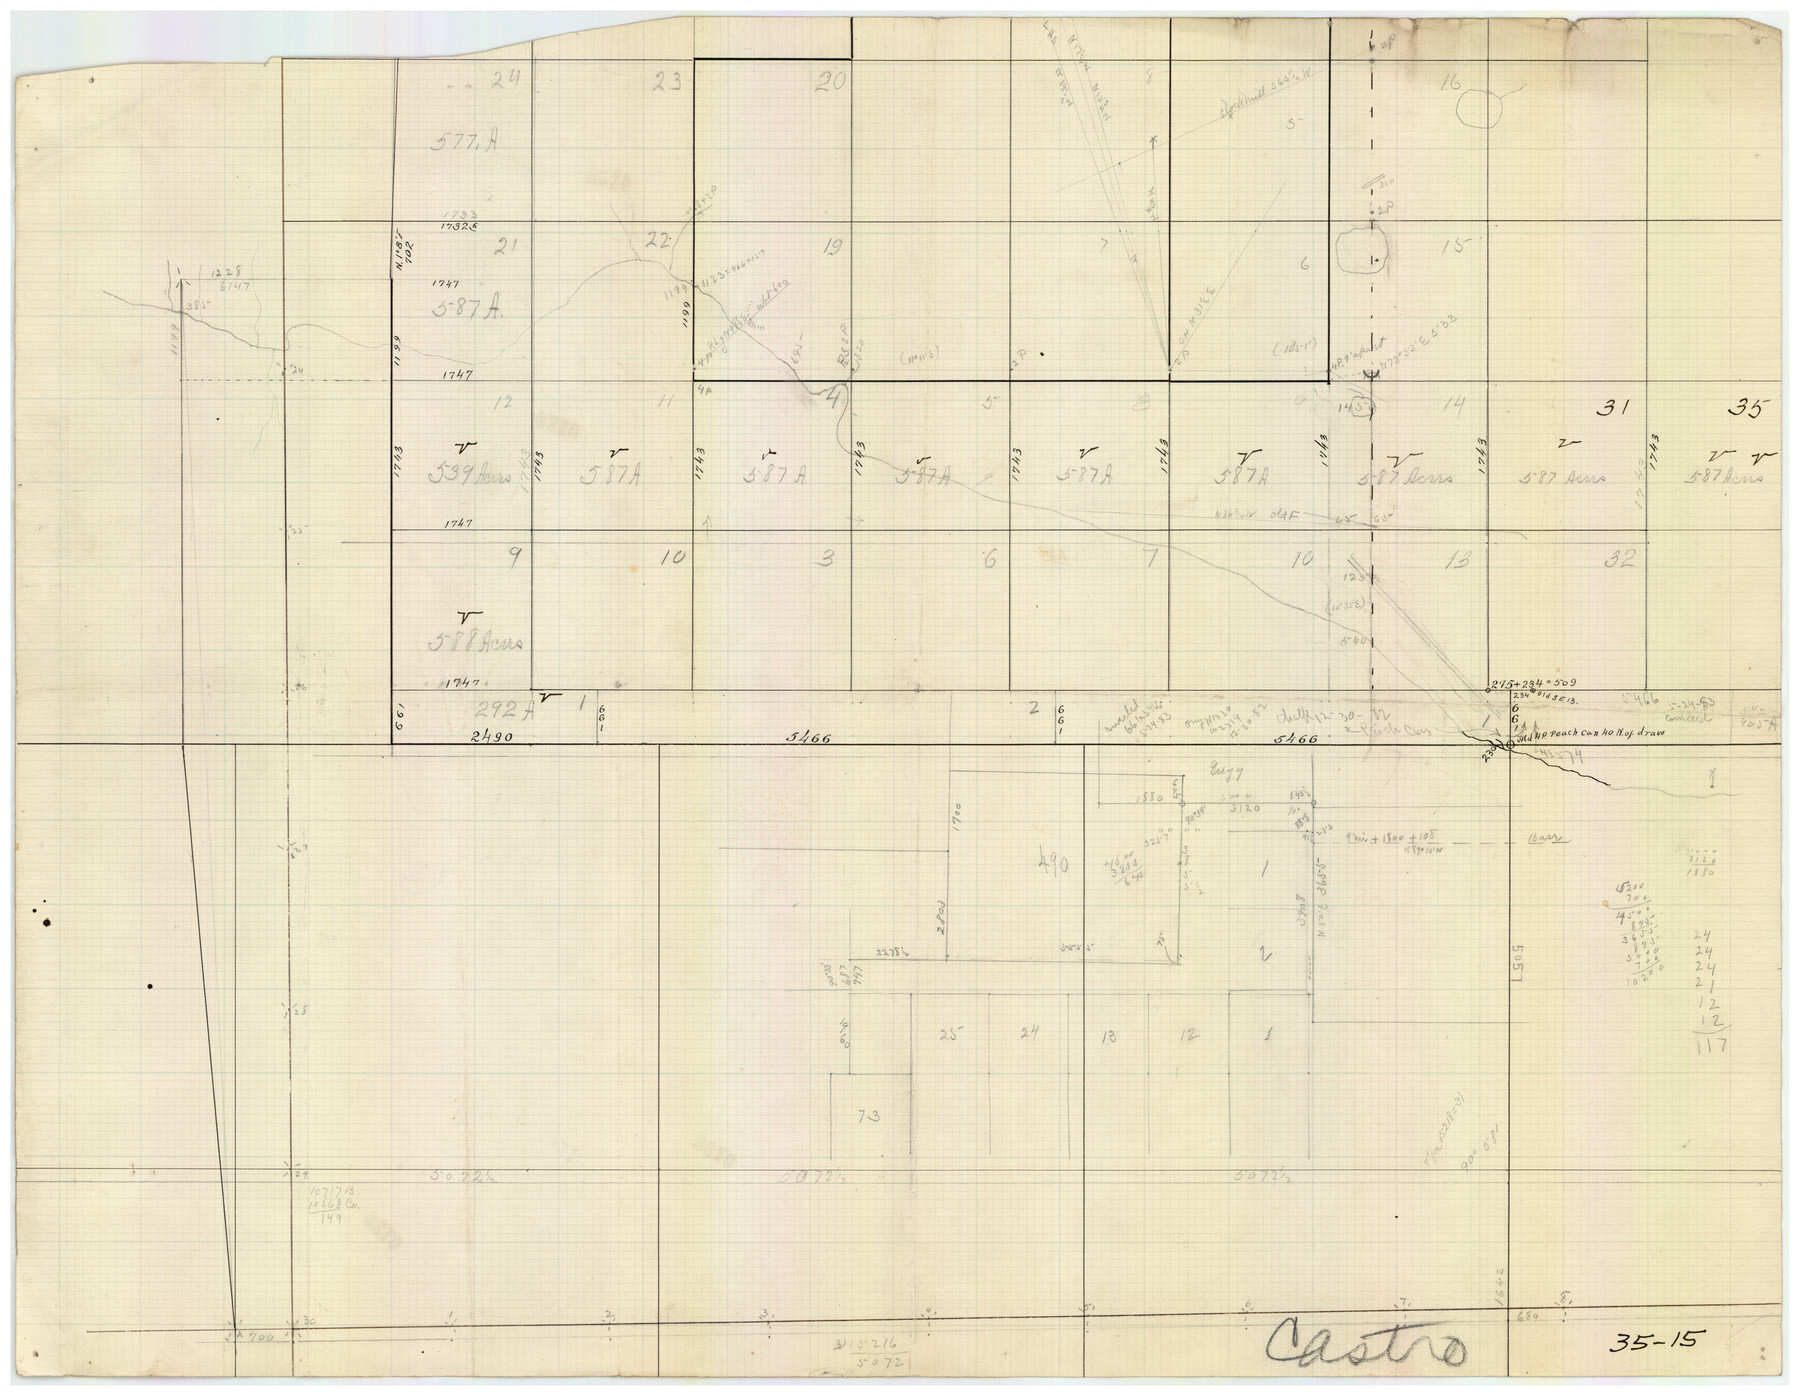 90402, [Capitol Leagues 572 & 573, T. A. Thomson Blk. T4, part of D. S. & E. Blk. O4], Twichell Survey Records